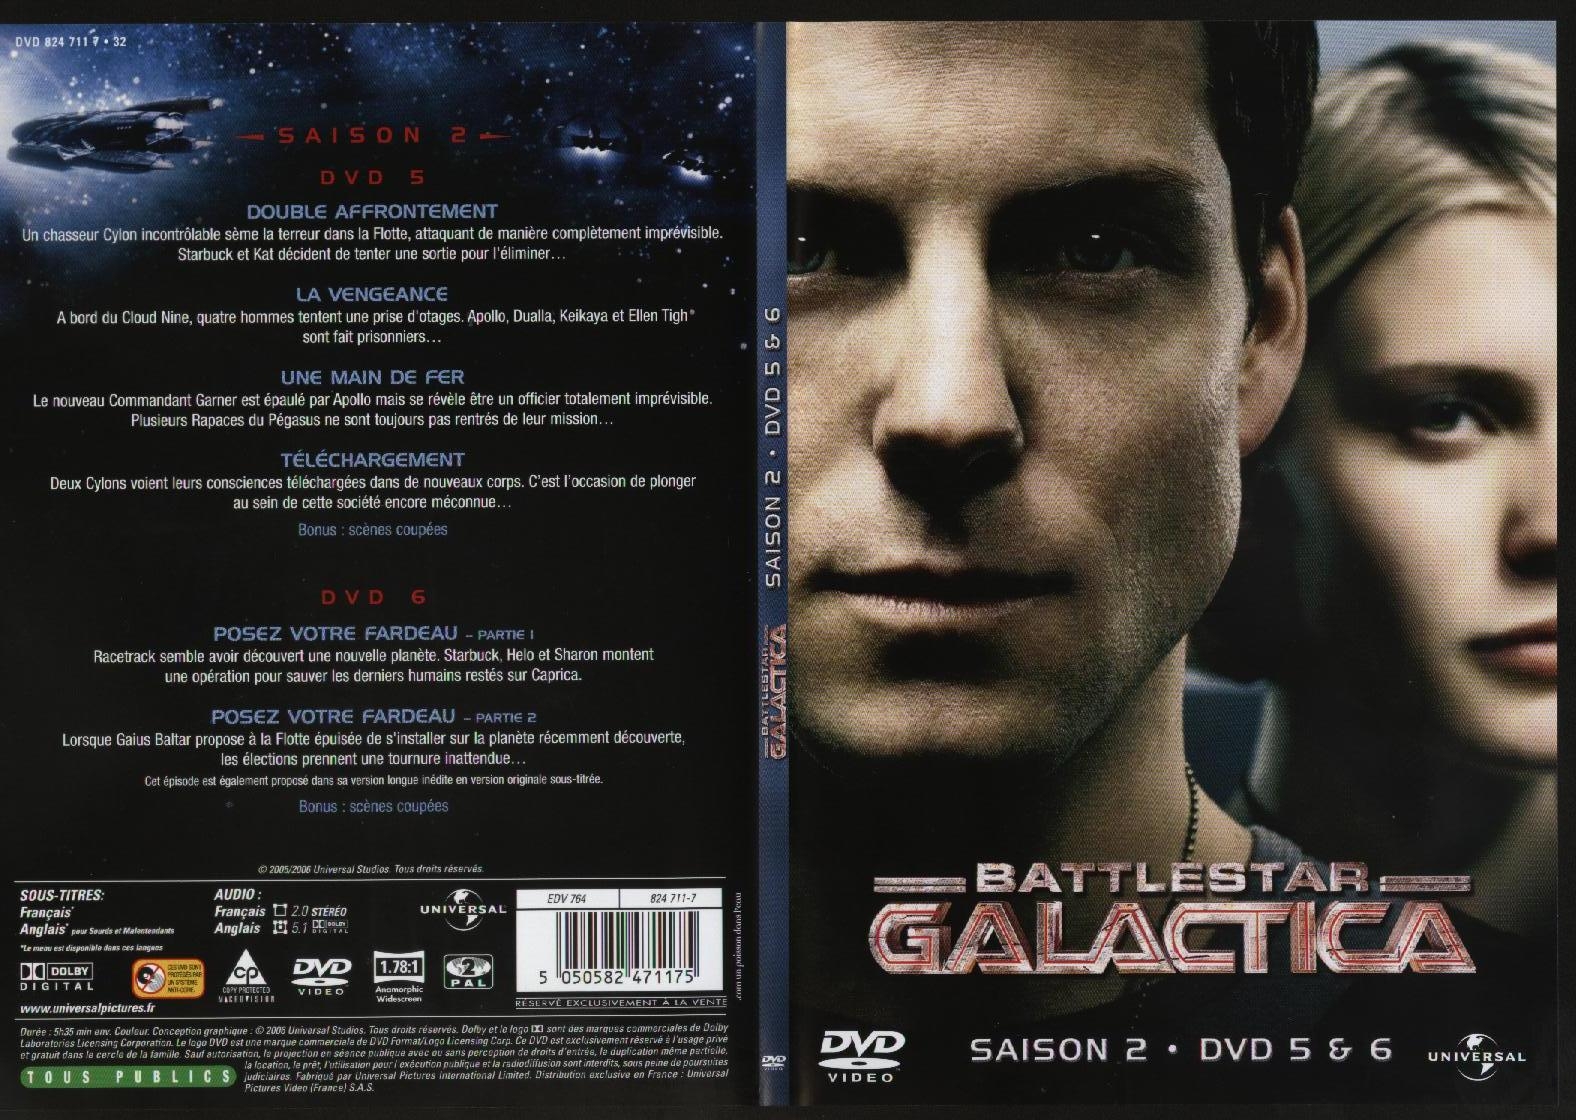 Jaquette DVD Battlestar Galactica saison 2 dvd 5 et 6